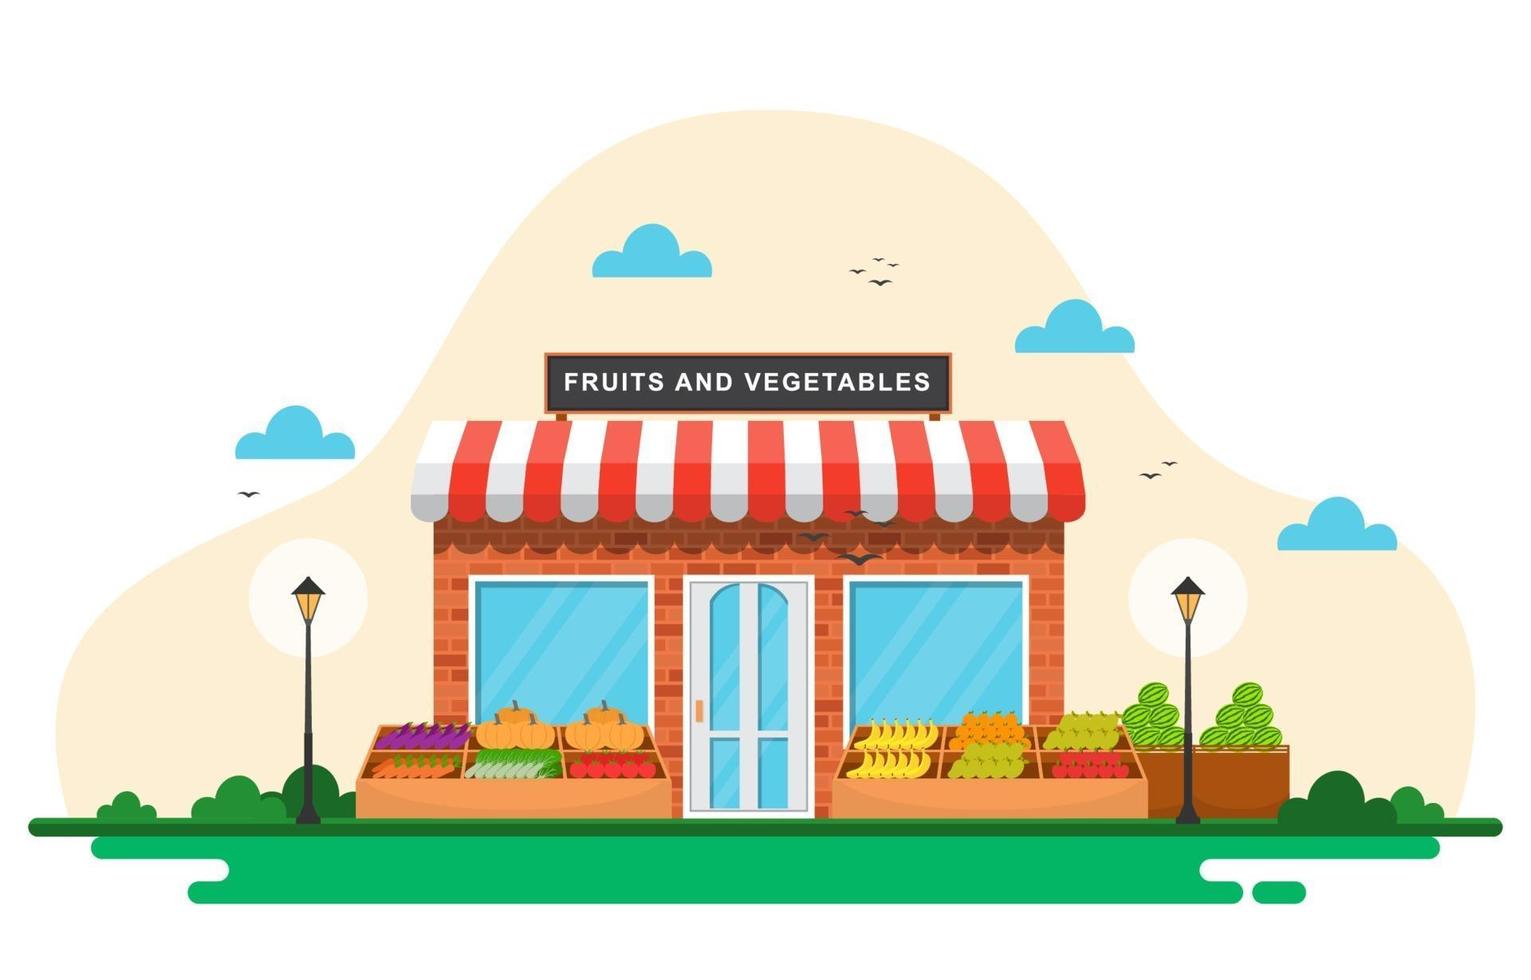 barraca de loja de vegetais de frutas frescas com mercearia em ilustração de mercado vetor